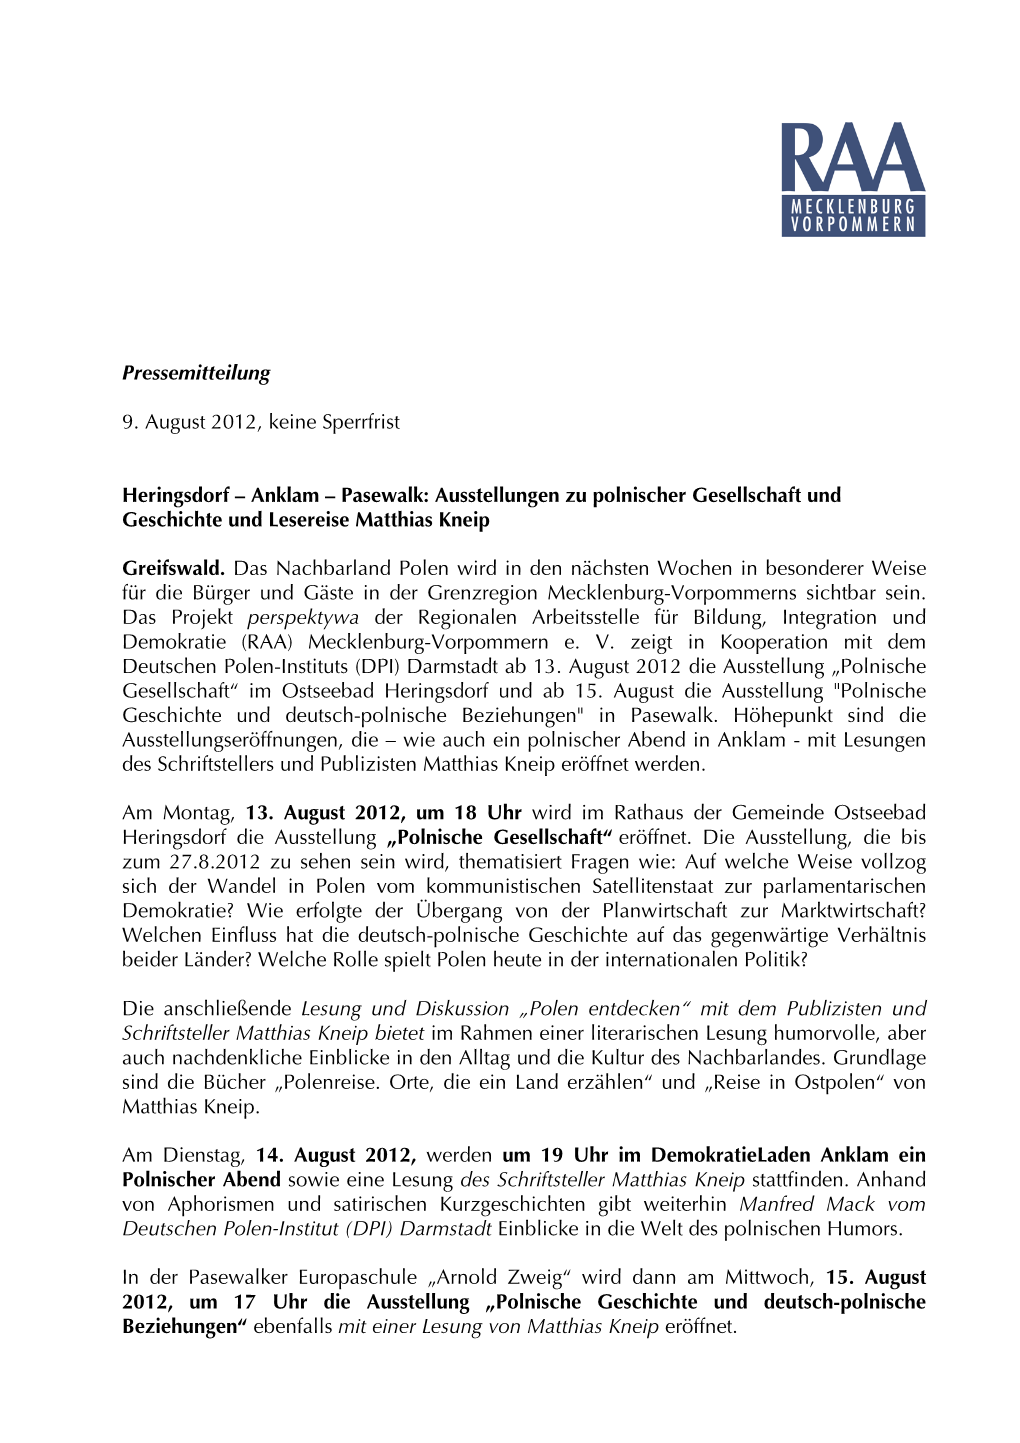 Pressemitteilung 9. August 2012, Keine Sperrfrist Heringsdorf